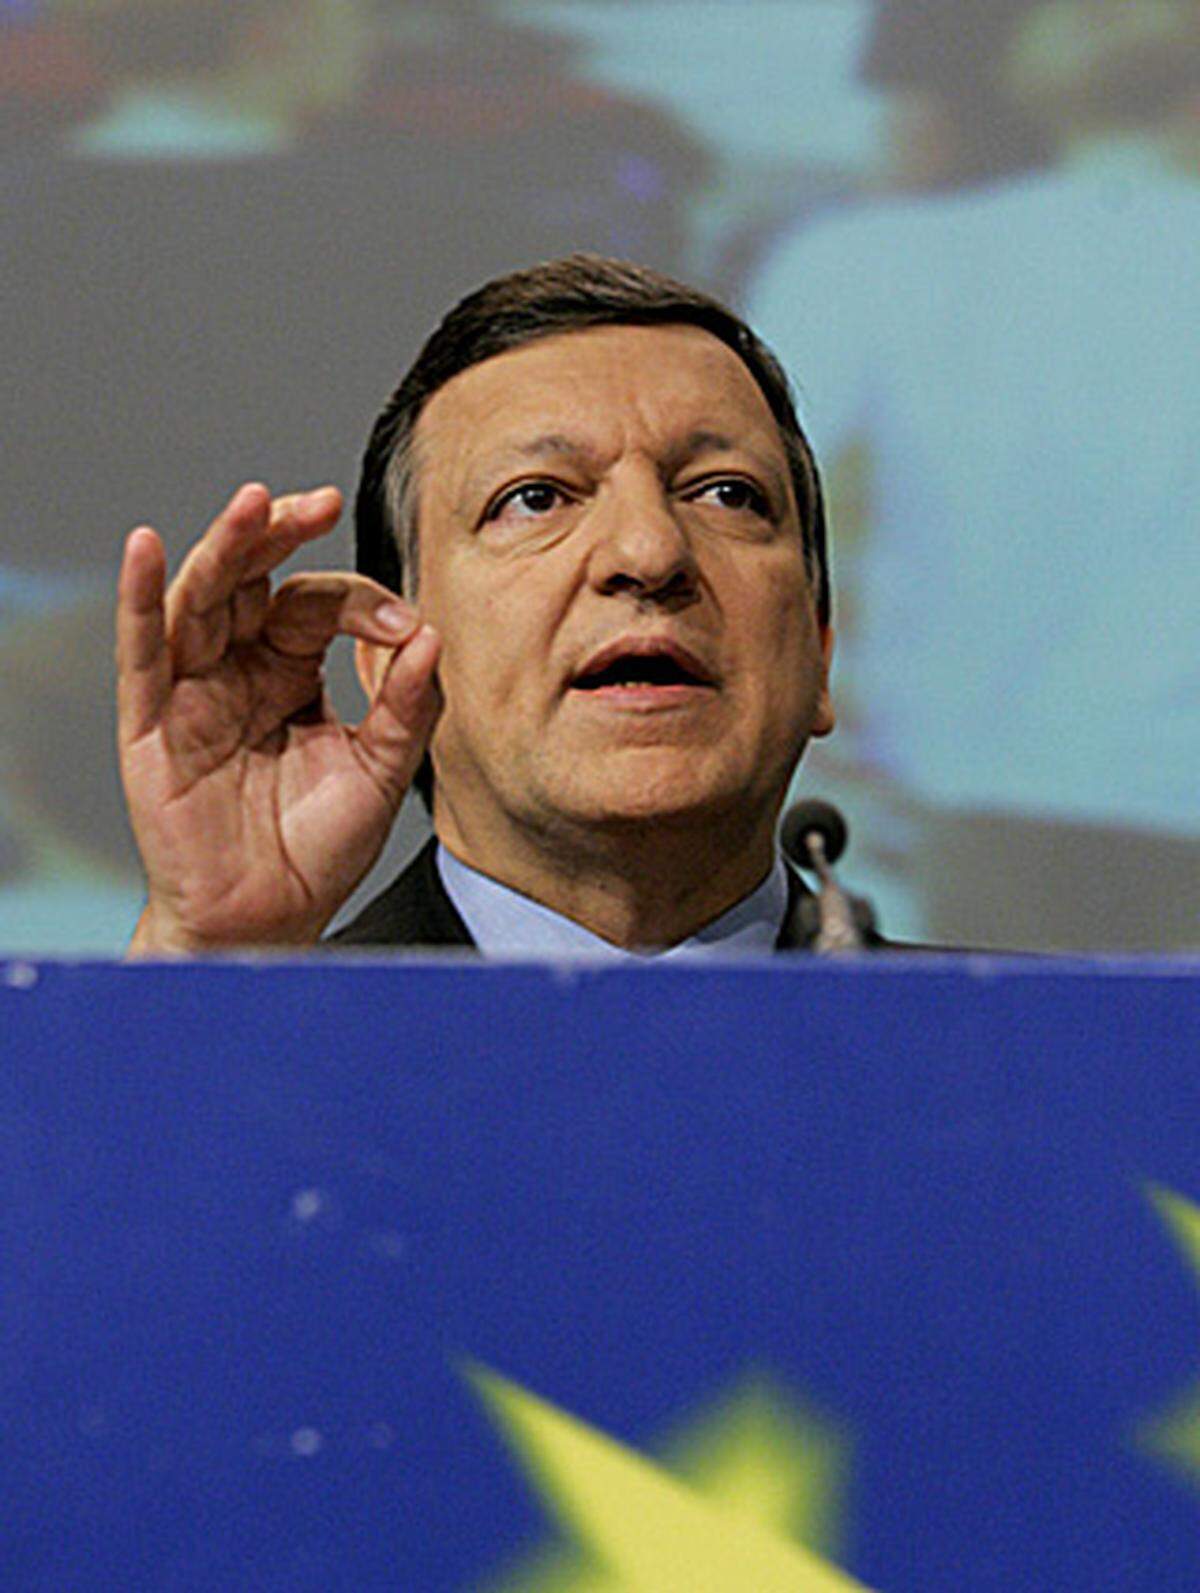 Barroso ist kein Visionär, sondern Realist. Er glaubt nicht, dass die Nationalstaaten Feinde Europas sind - er versucht hingegen, sie an die Hand zu nehmen und zu Kompromissen zu überzeugen. Er sieht sich da eher in der Rolle eines Schiedsrichters denn eines Präsidenten, der laute Machtworte spricht.